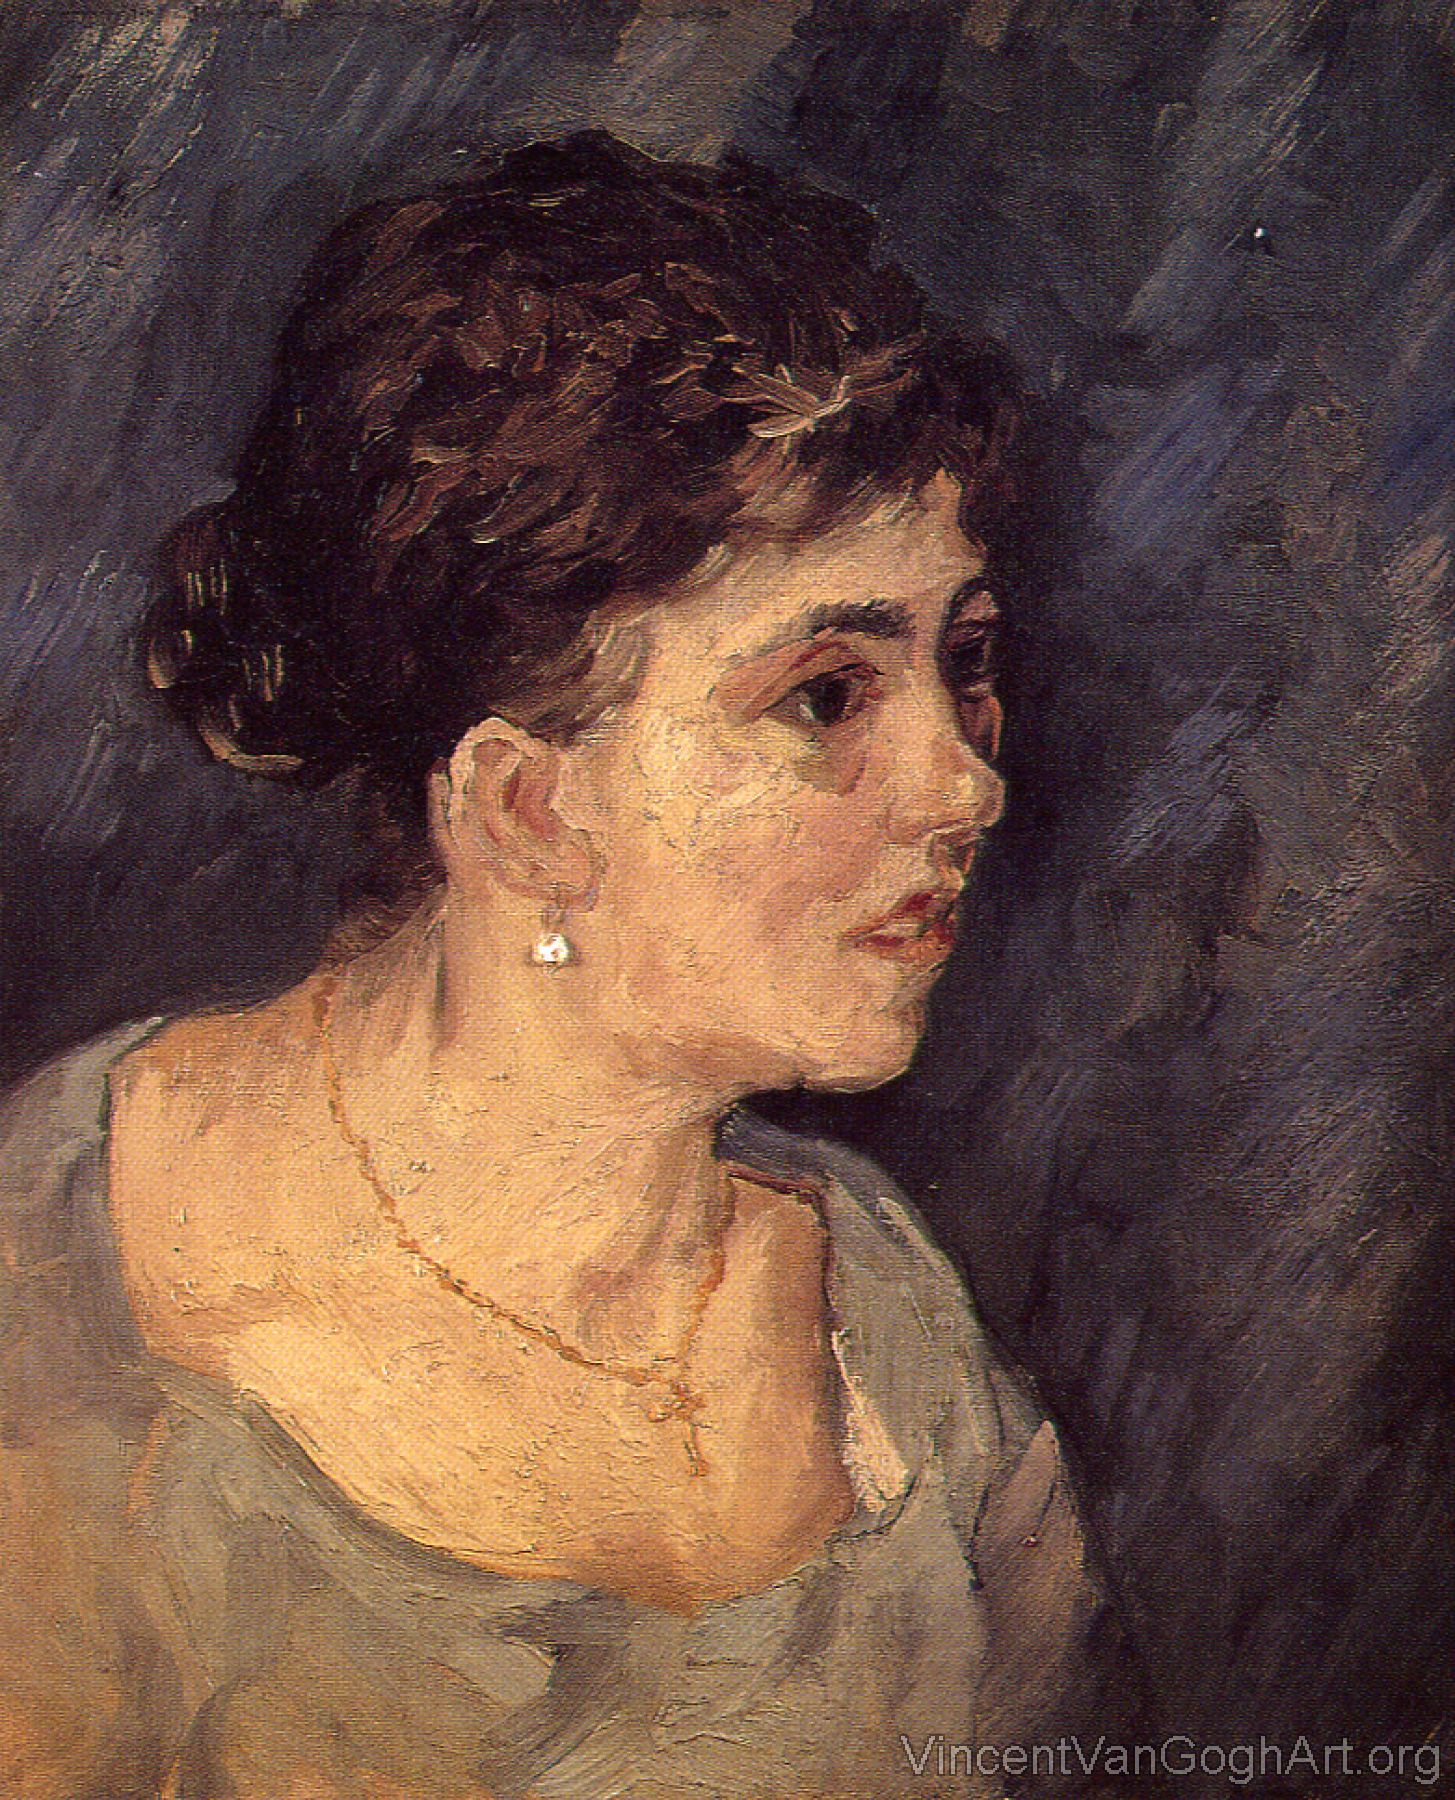 Portrait of Woman in Blue